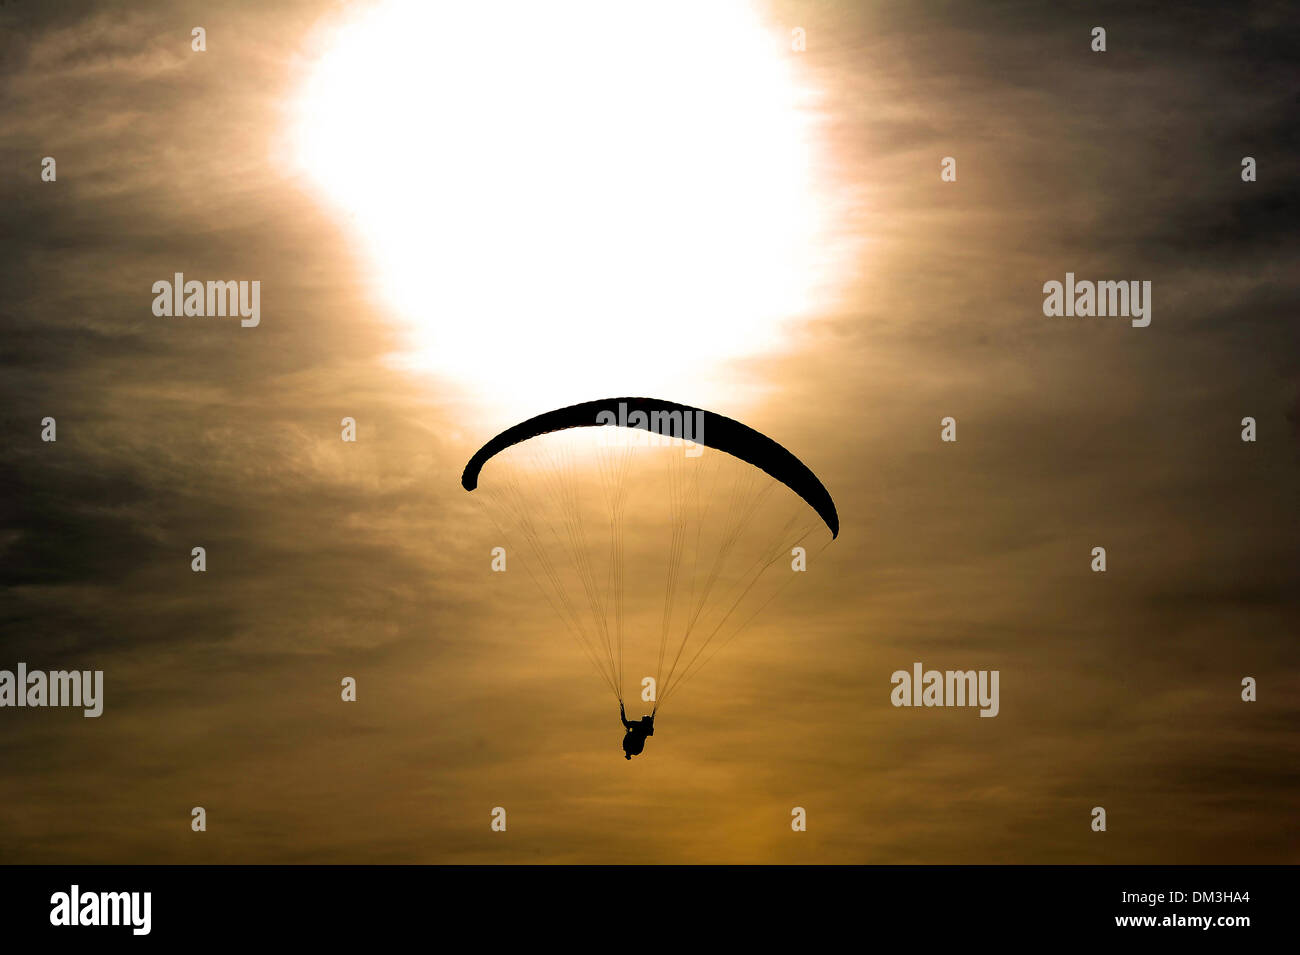 Parapente, parachute, Silhouette d'un parapente Banque D'Images